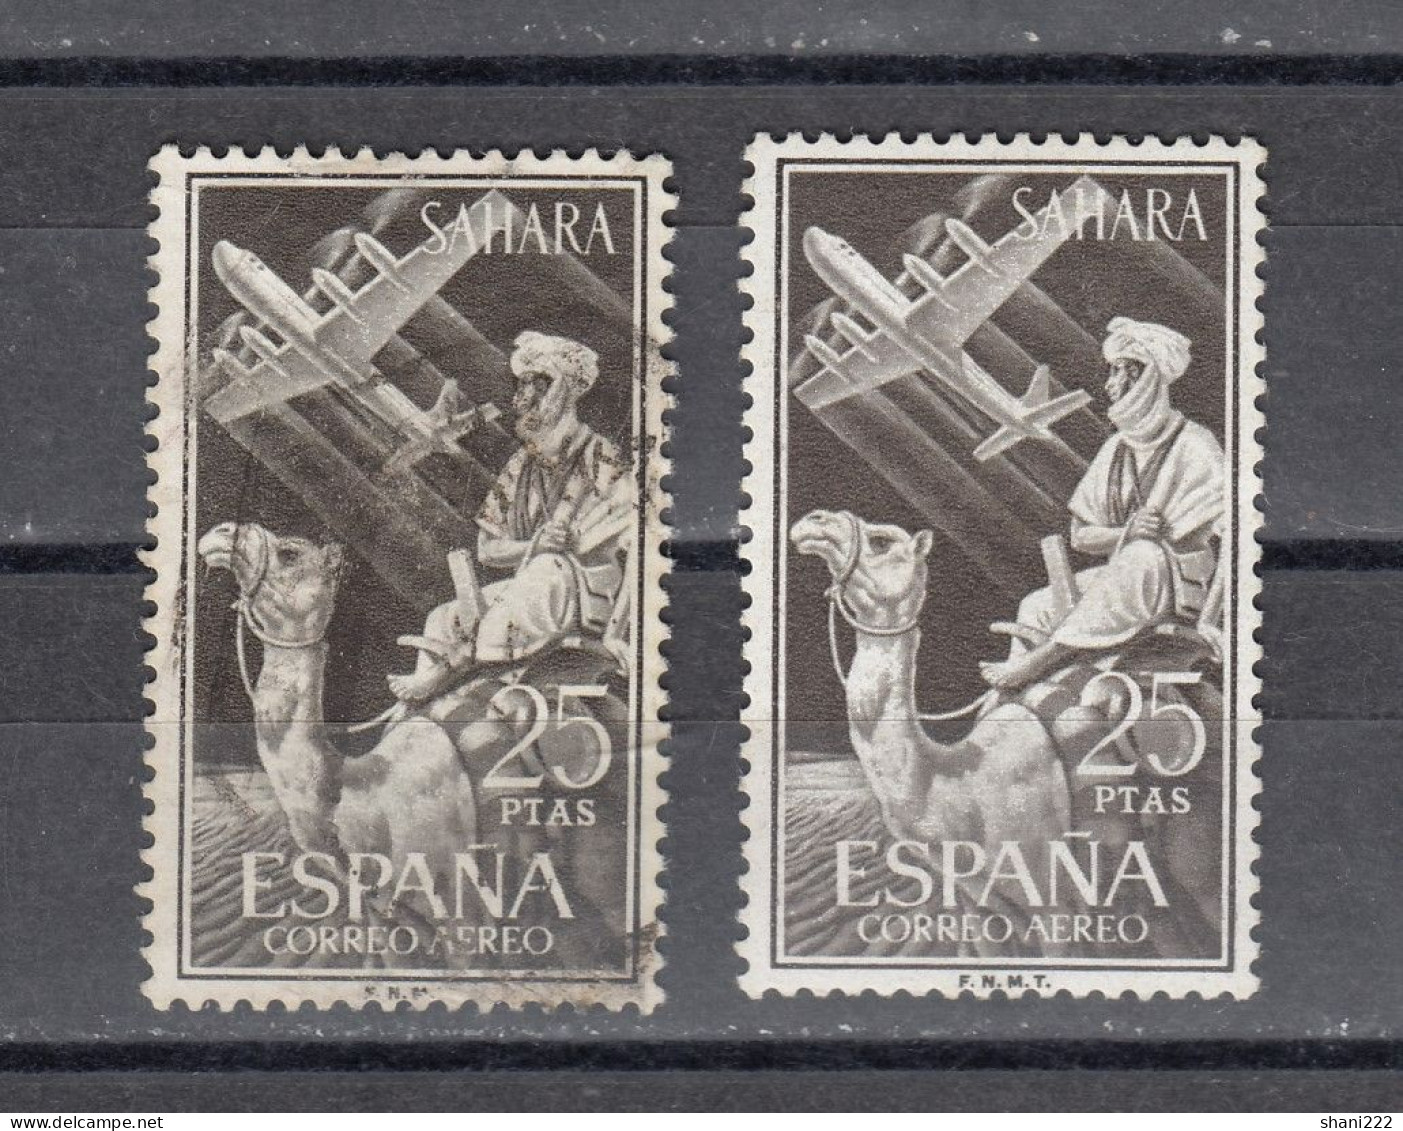 Spanish Sahara 1961 - Air - 2t Pta Used And MH Stamps (e-872) - Spanish Sahara